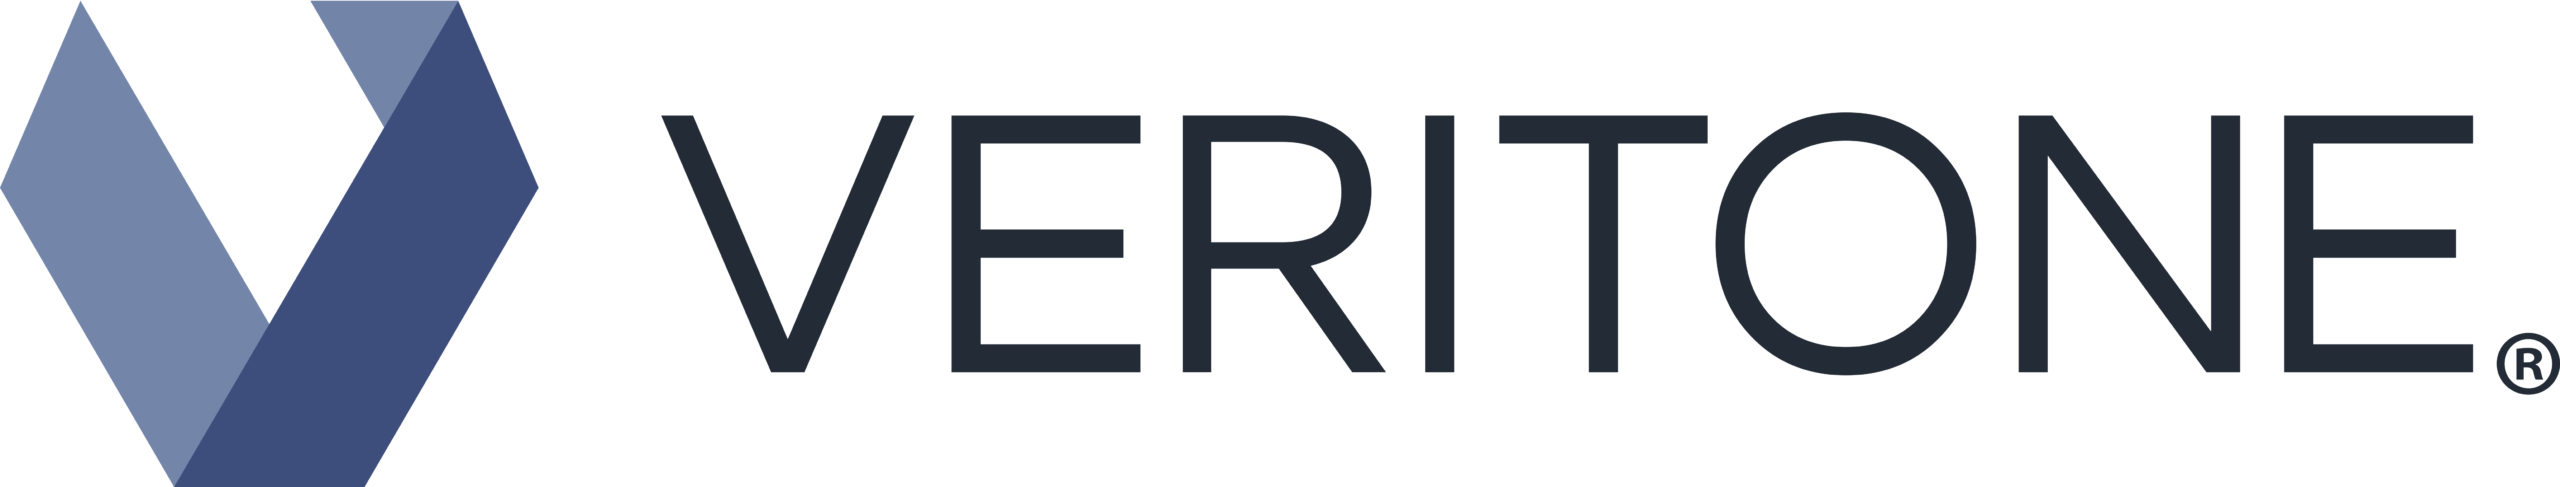 Logo for Veritone